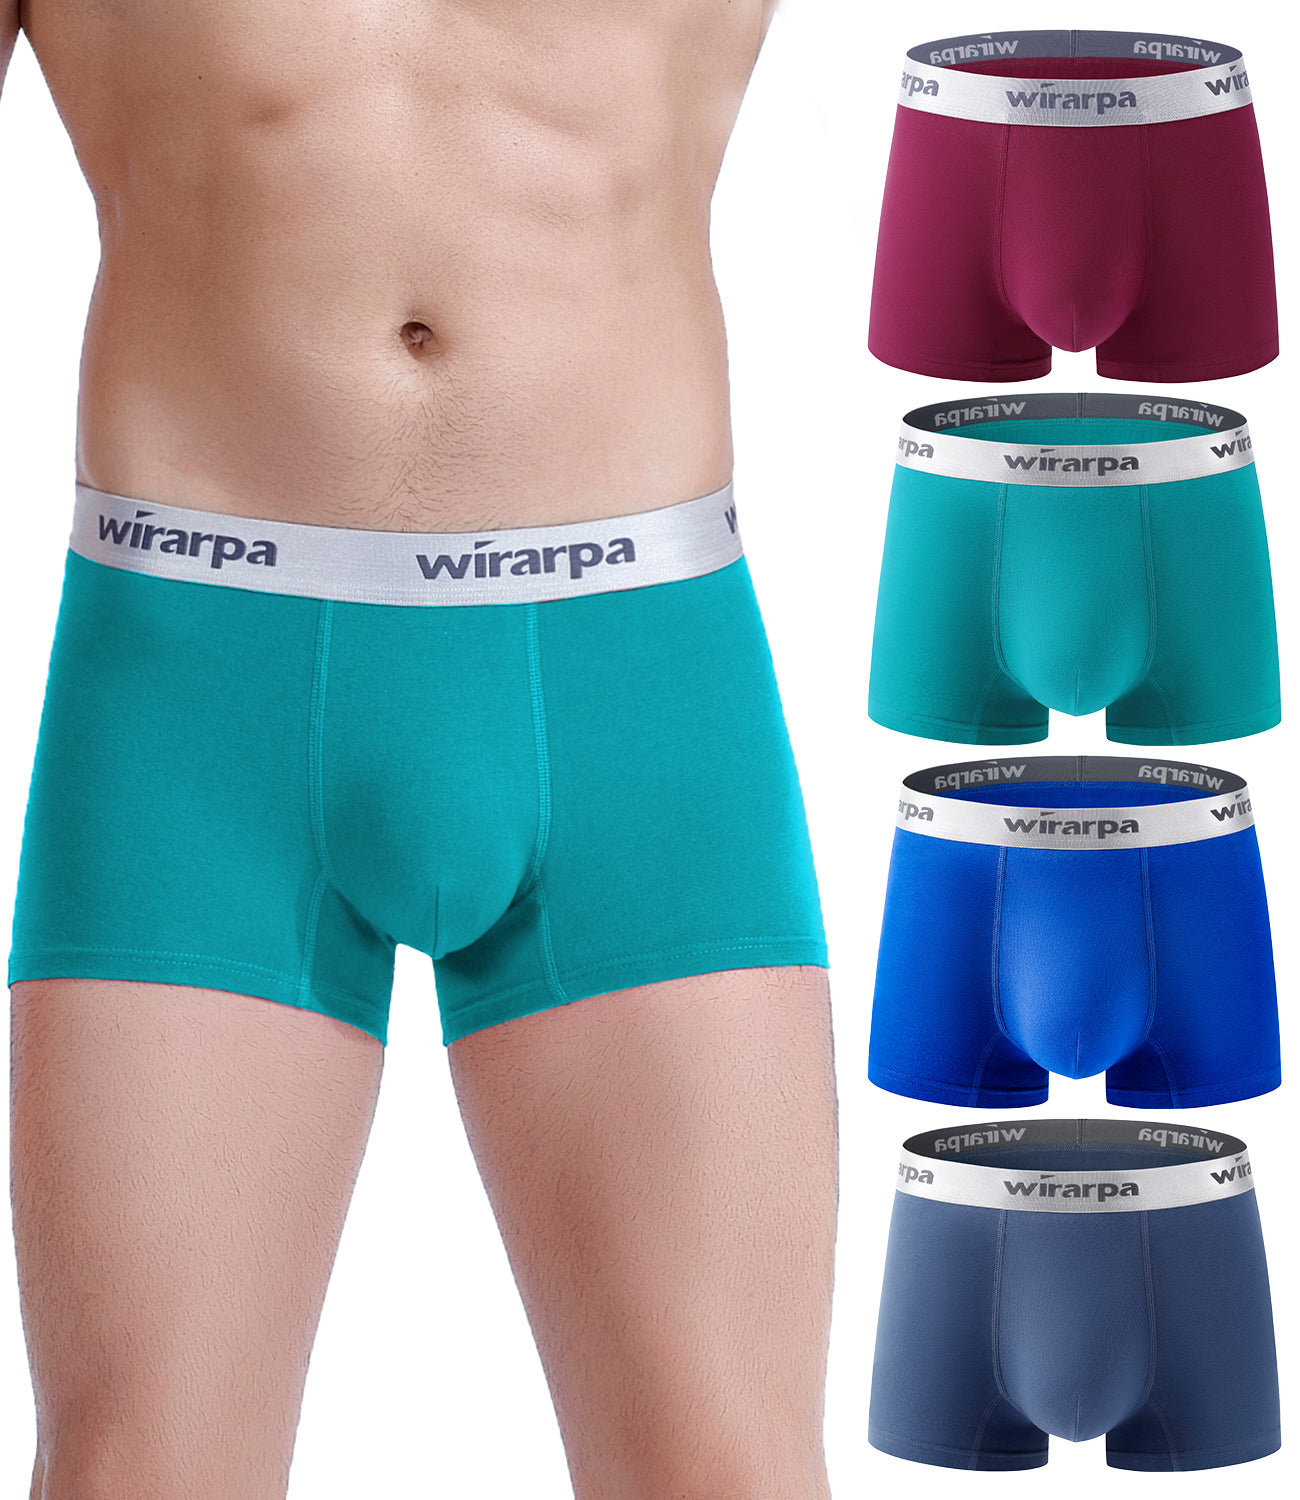 wirarpa Women's Cotton Boxer Briefs Underwear Anti Chafe Boy